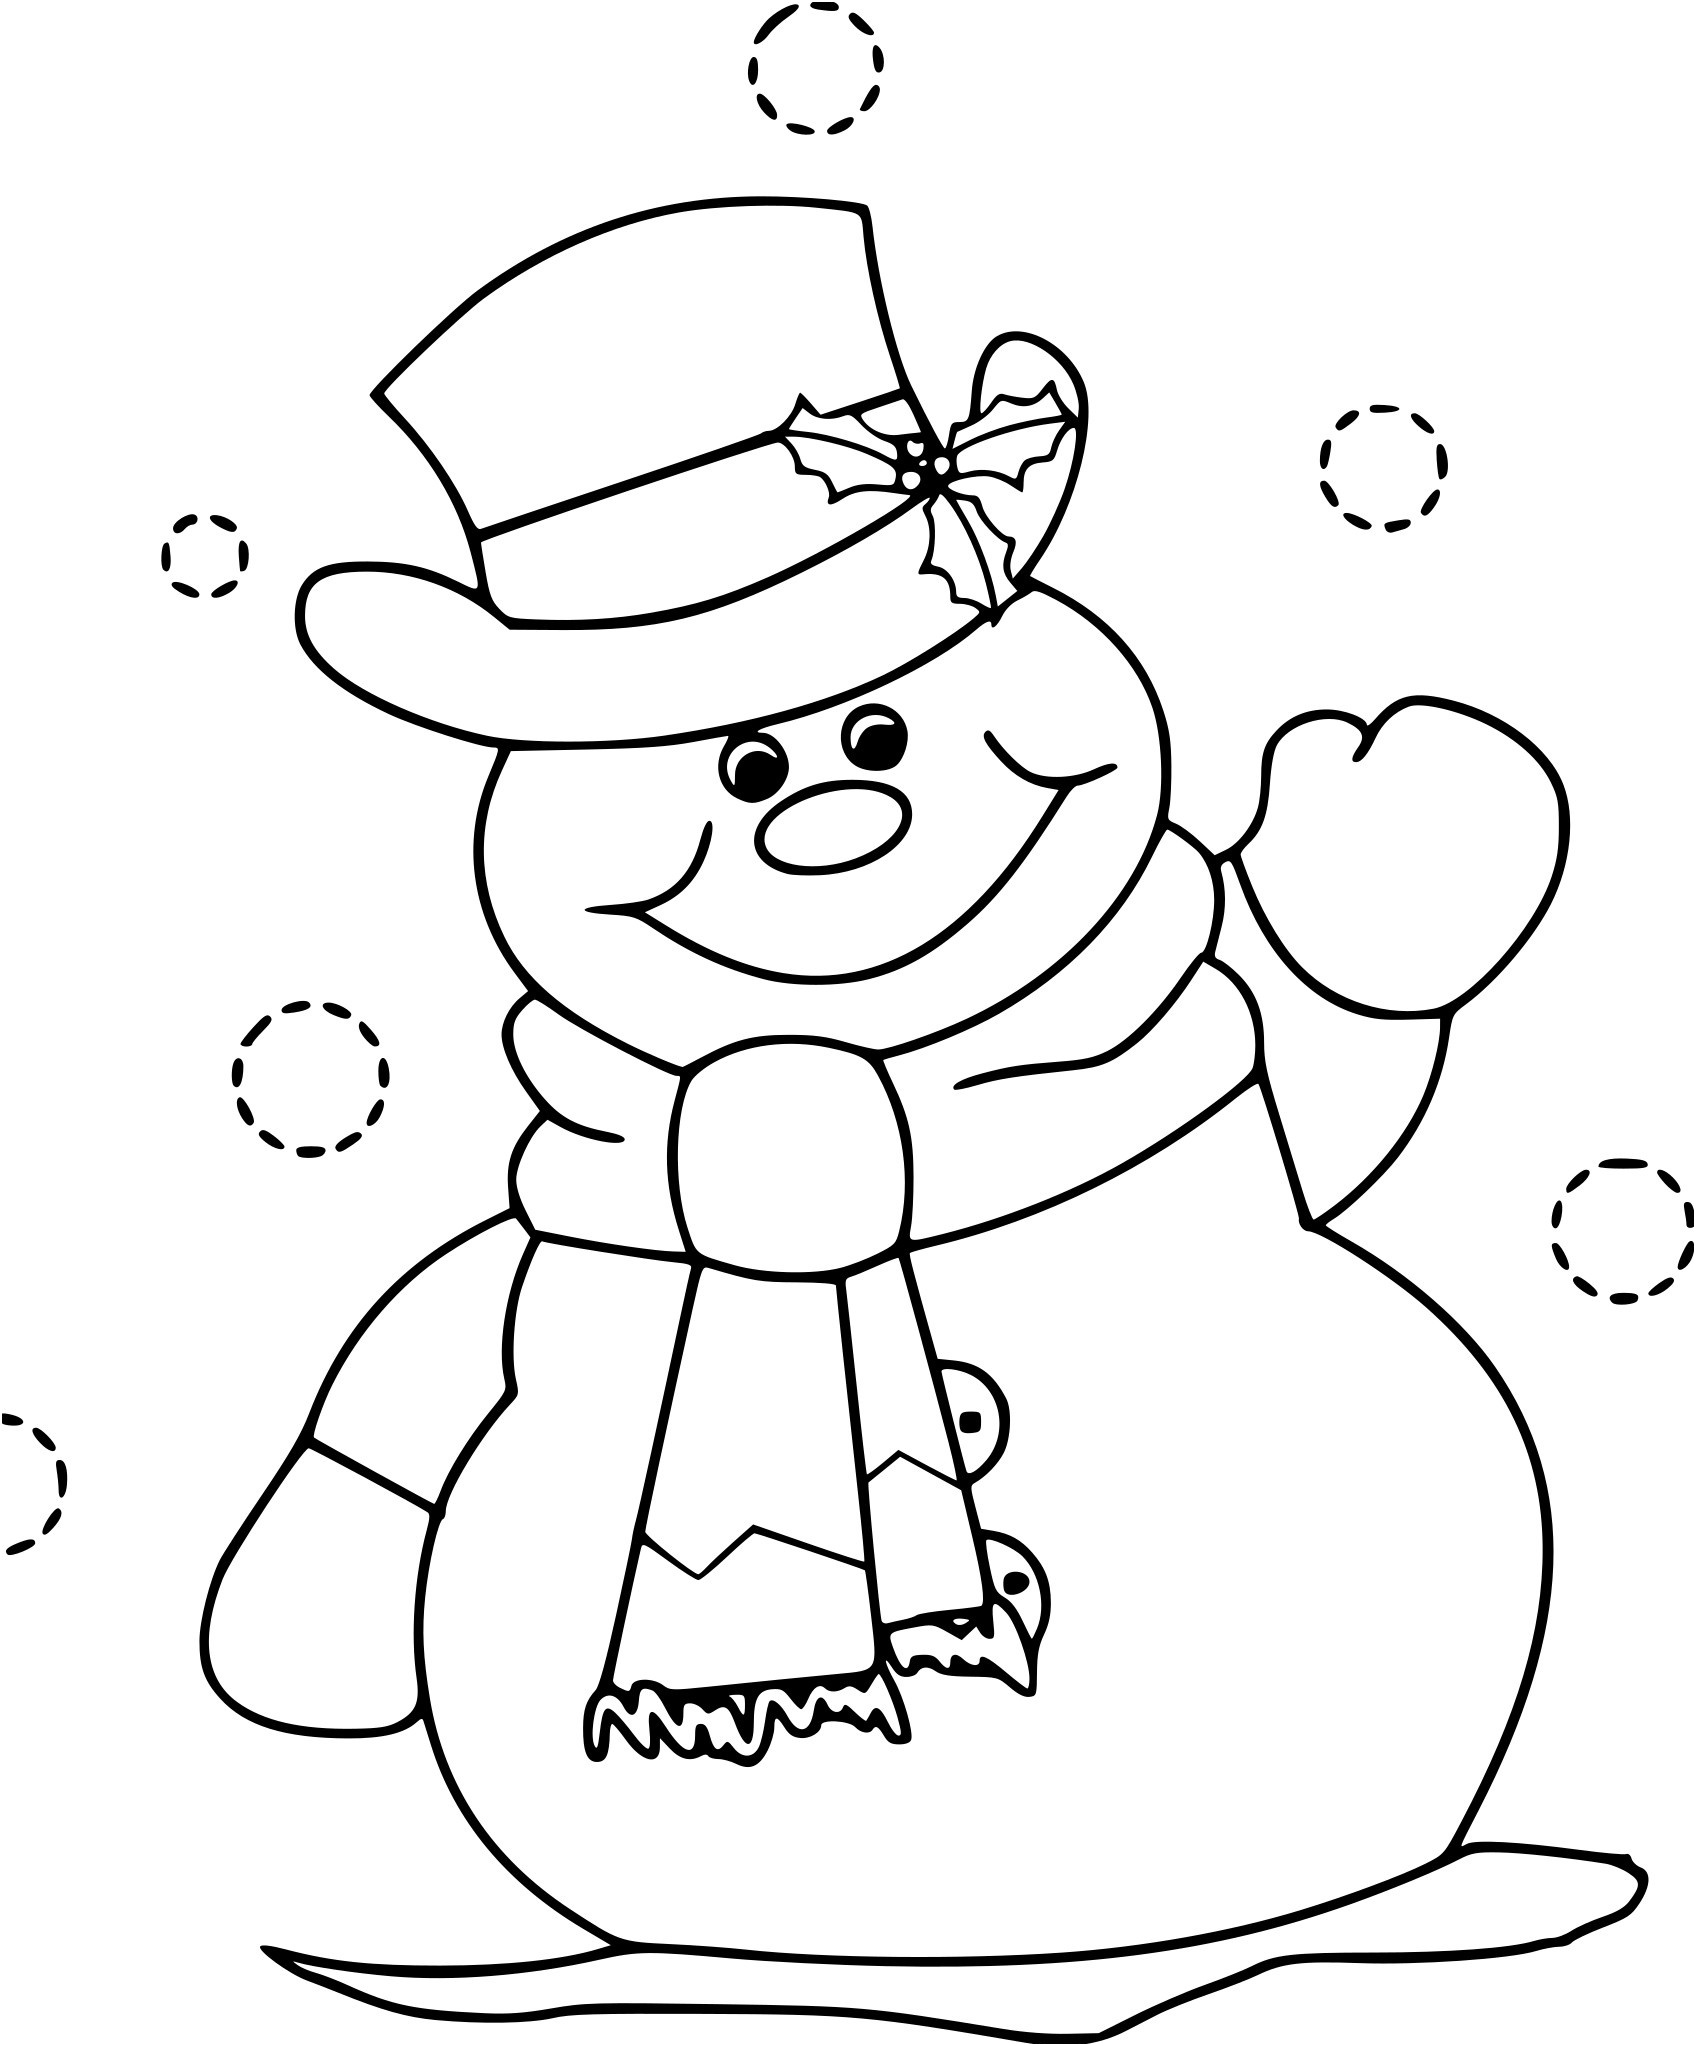 bonhomme de neige facile a dessiner